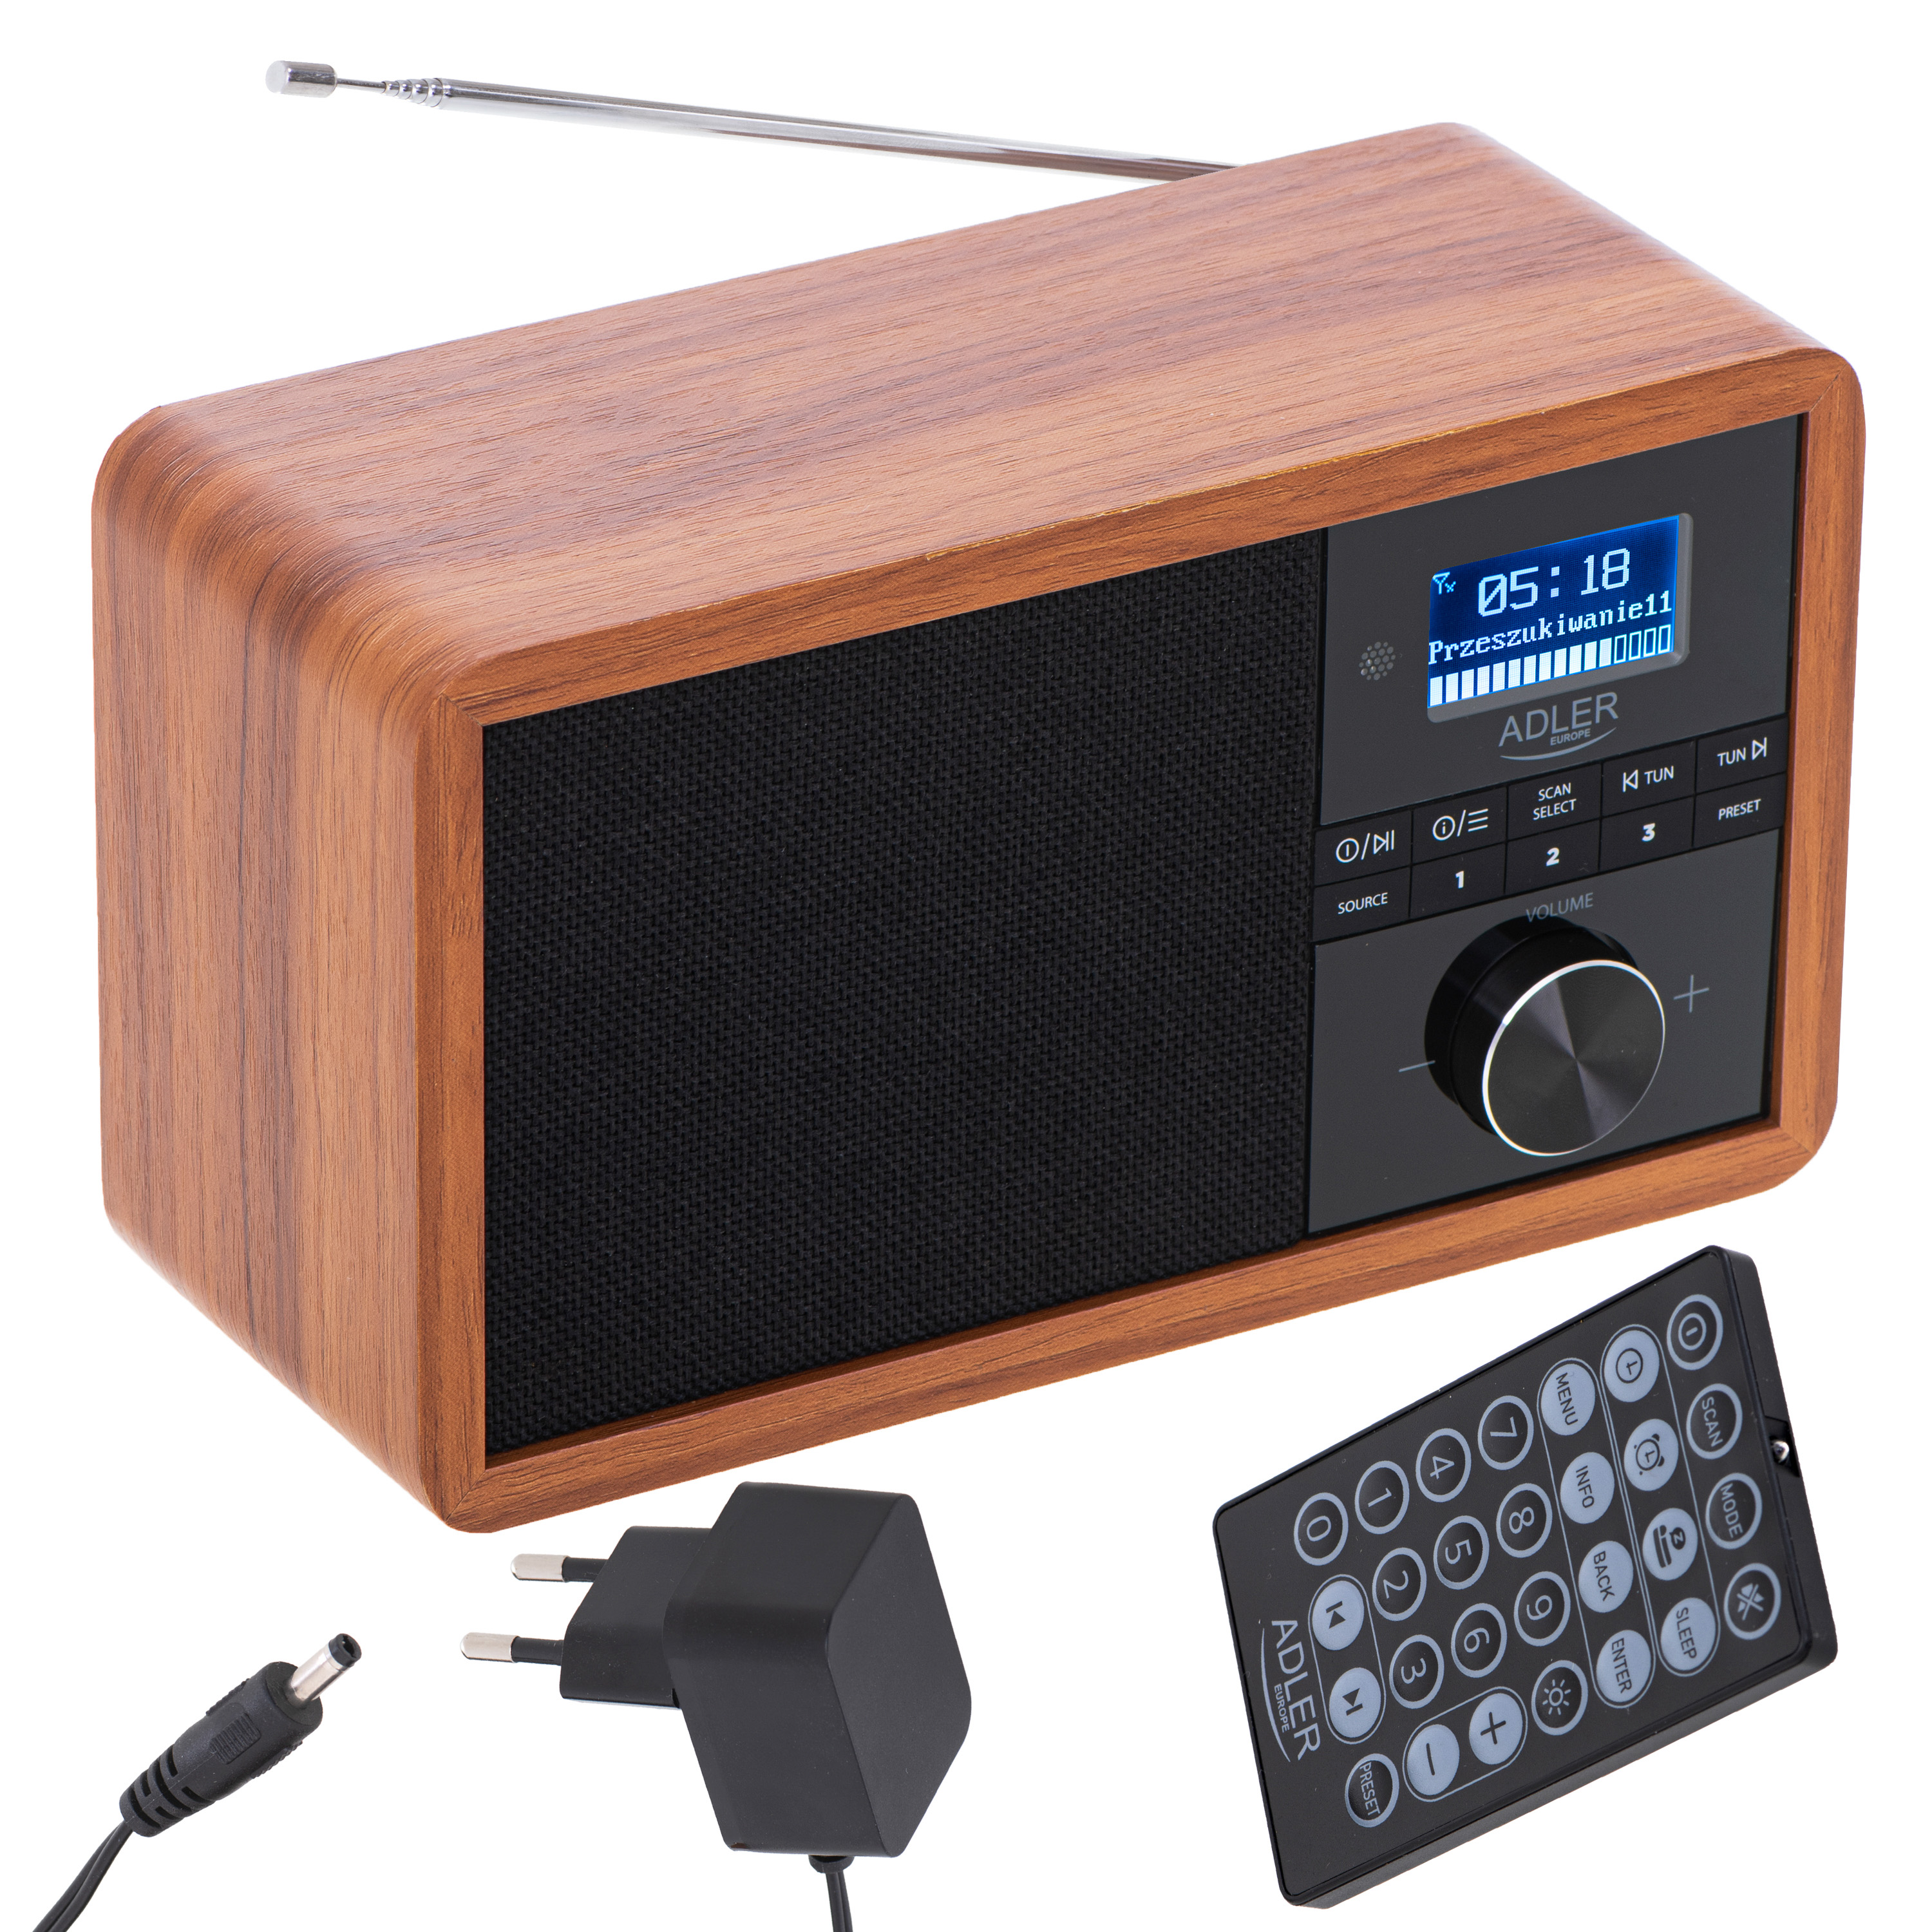 AD 1184 AM, ADLER Radio, DAB+, braun FM, Bluetooth,